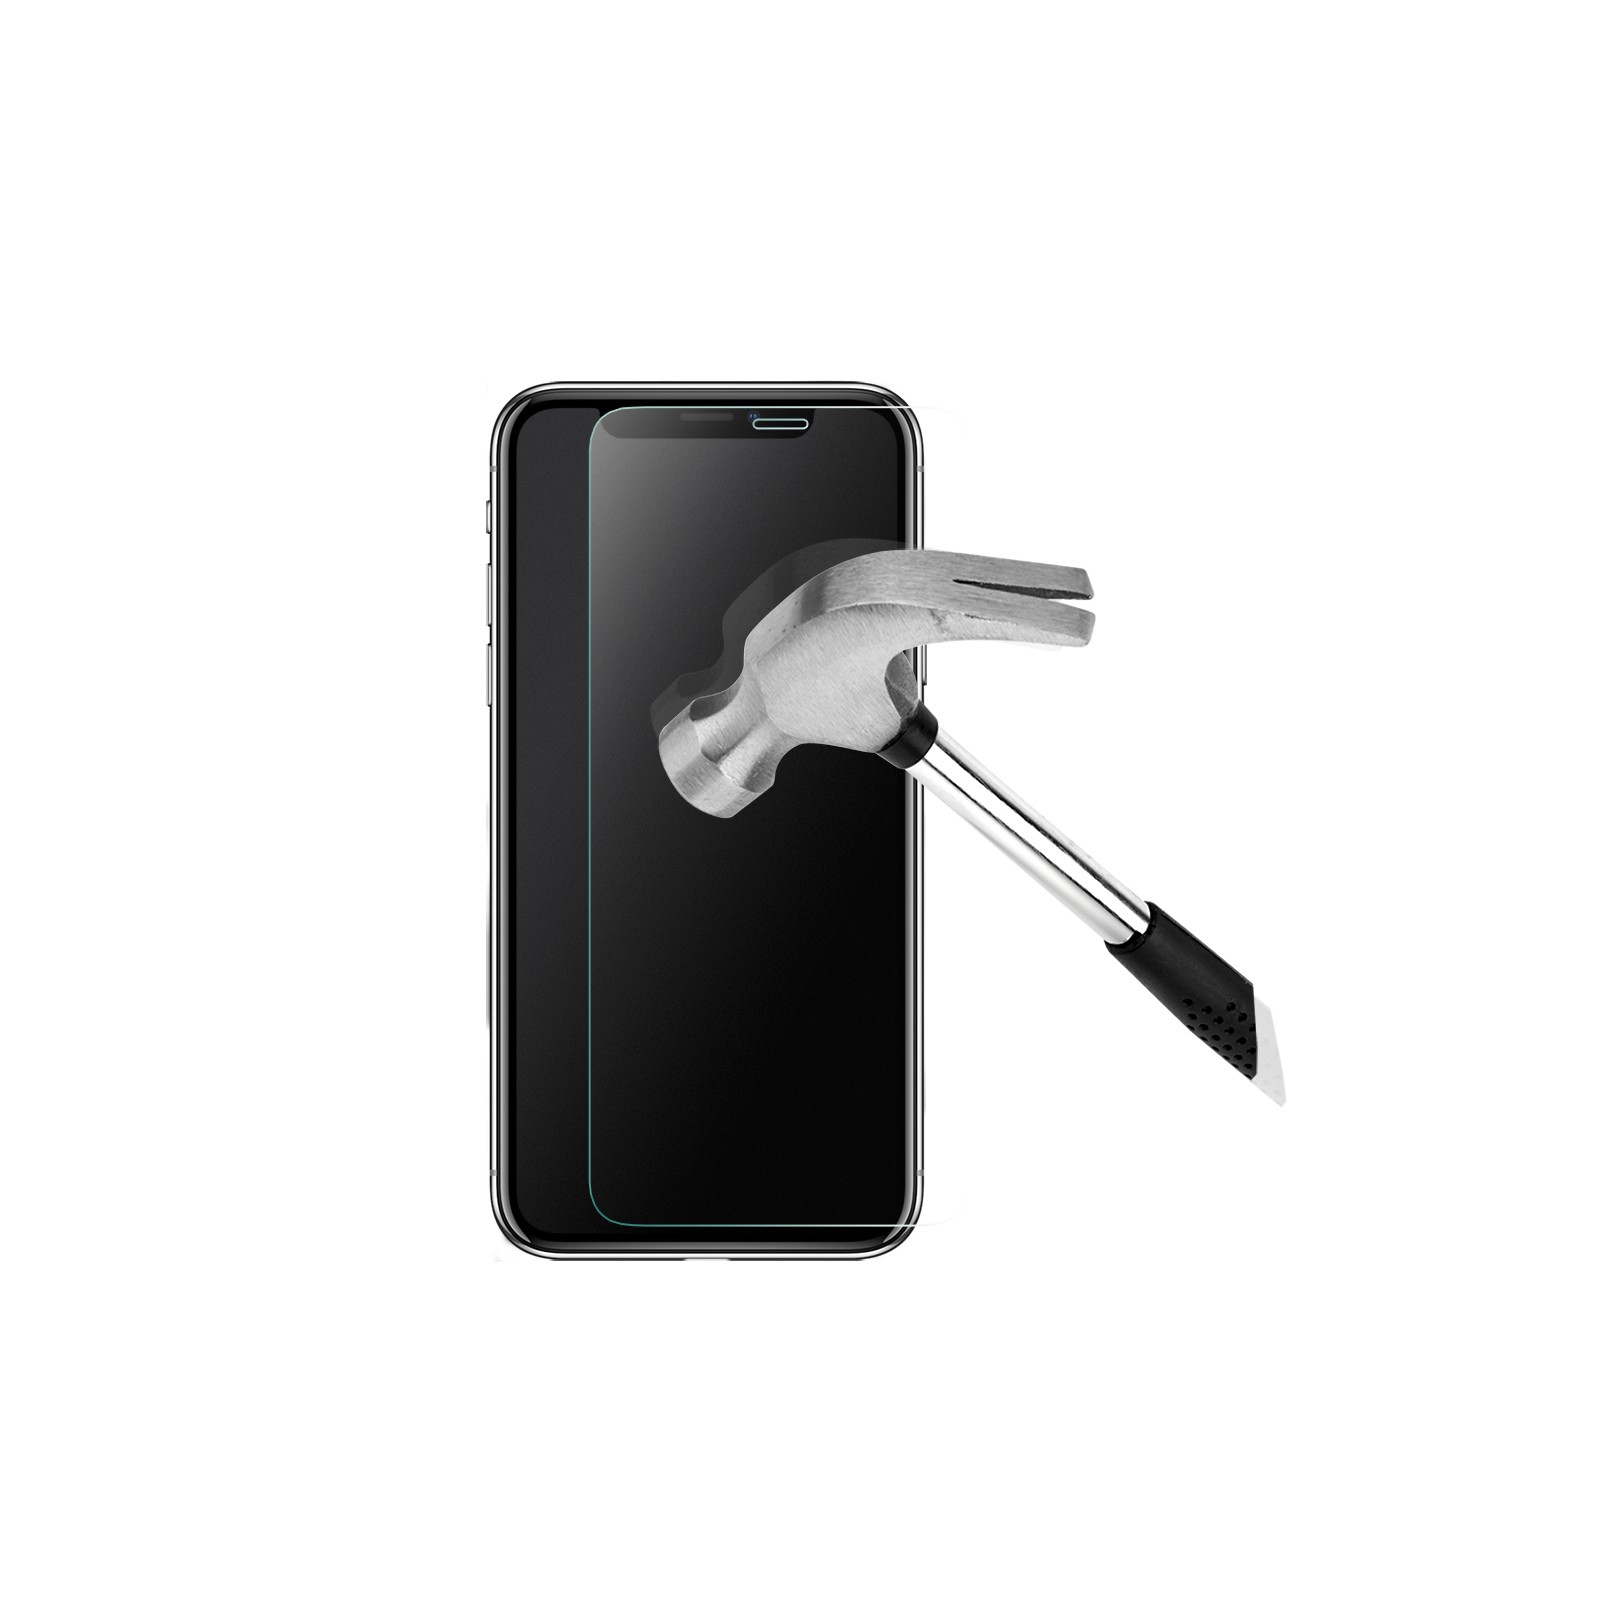 Protection trempé anti-espion pour Apple iPhone 13 Mini